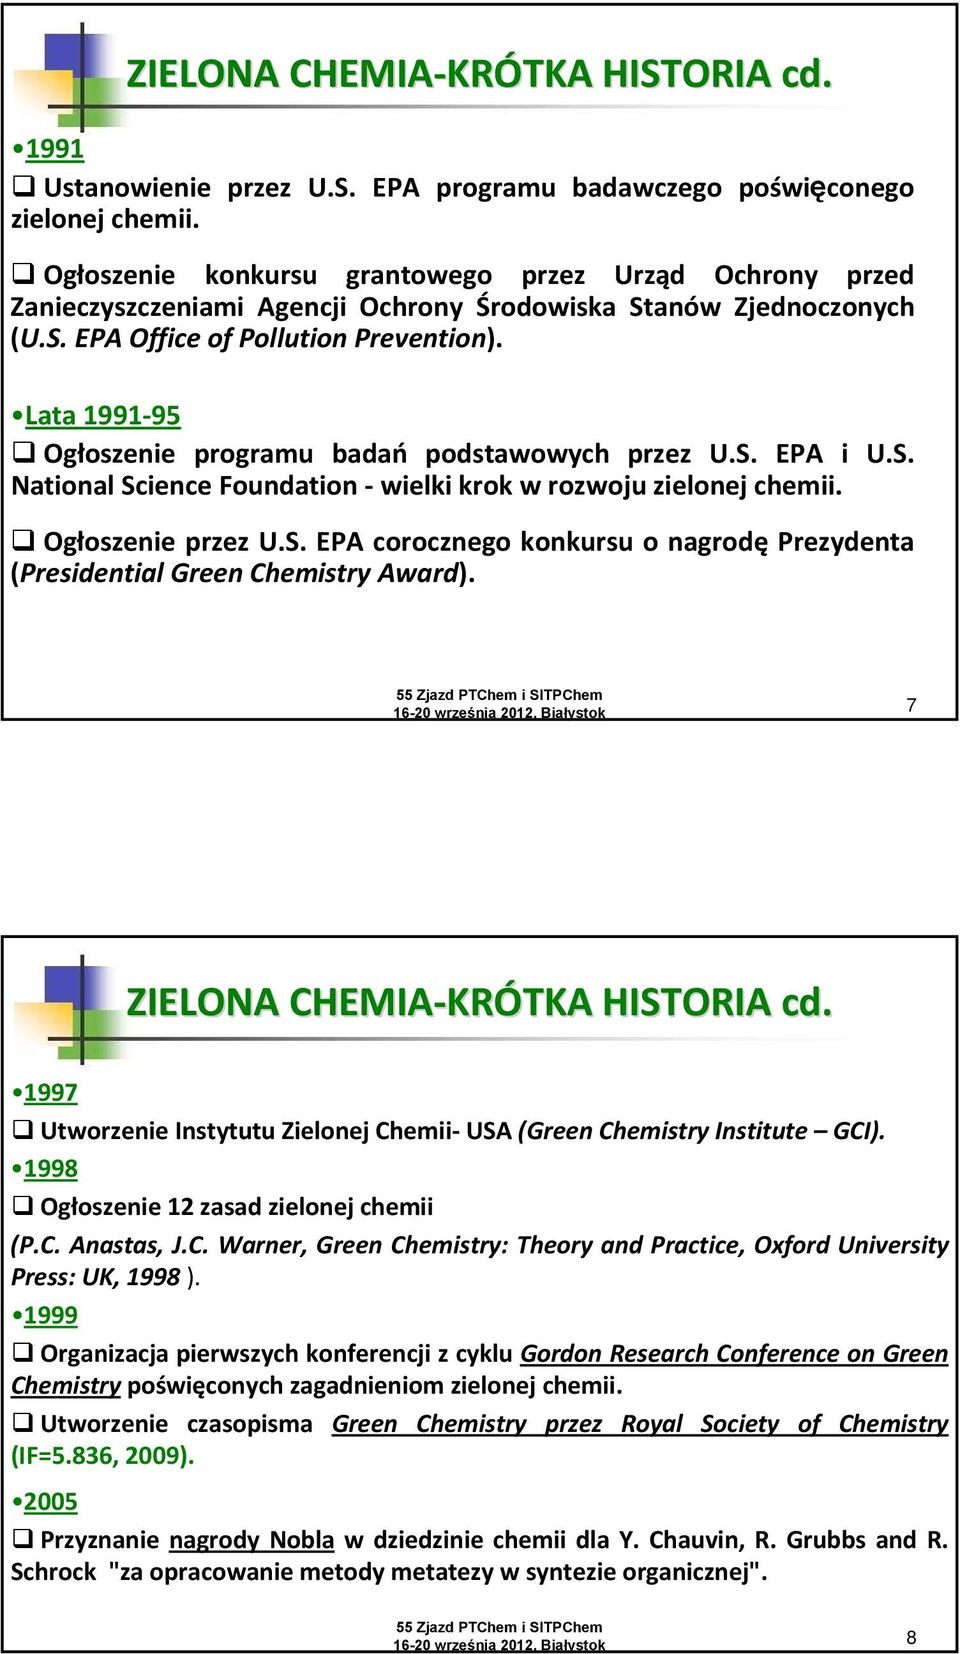 Lata 1991 95 Ogłoszenie programu badań podstawowych przez U.S. EPA i U.S. National Science Foundation wielki krok w rozwoju zielonej chemii. Ogłoszenie przez U.S. EPA corocznego konkursu o nagrodę Prezydenta (Presidential Green Chemistry Award).